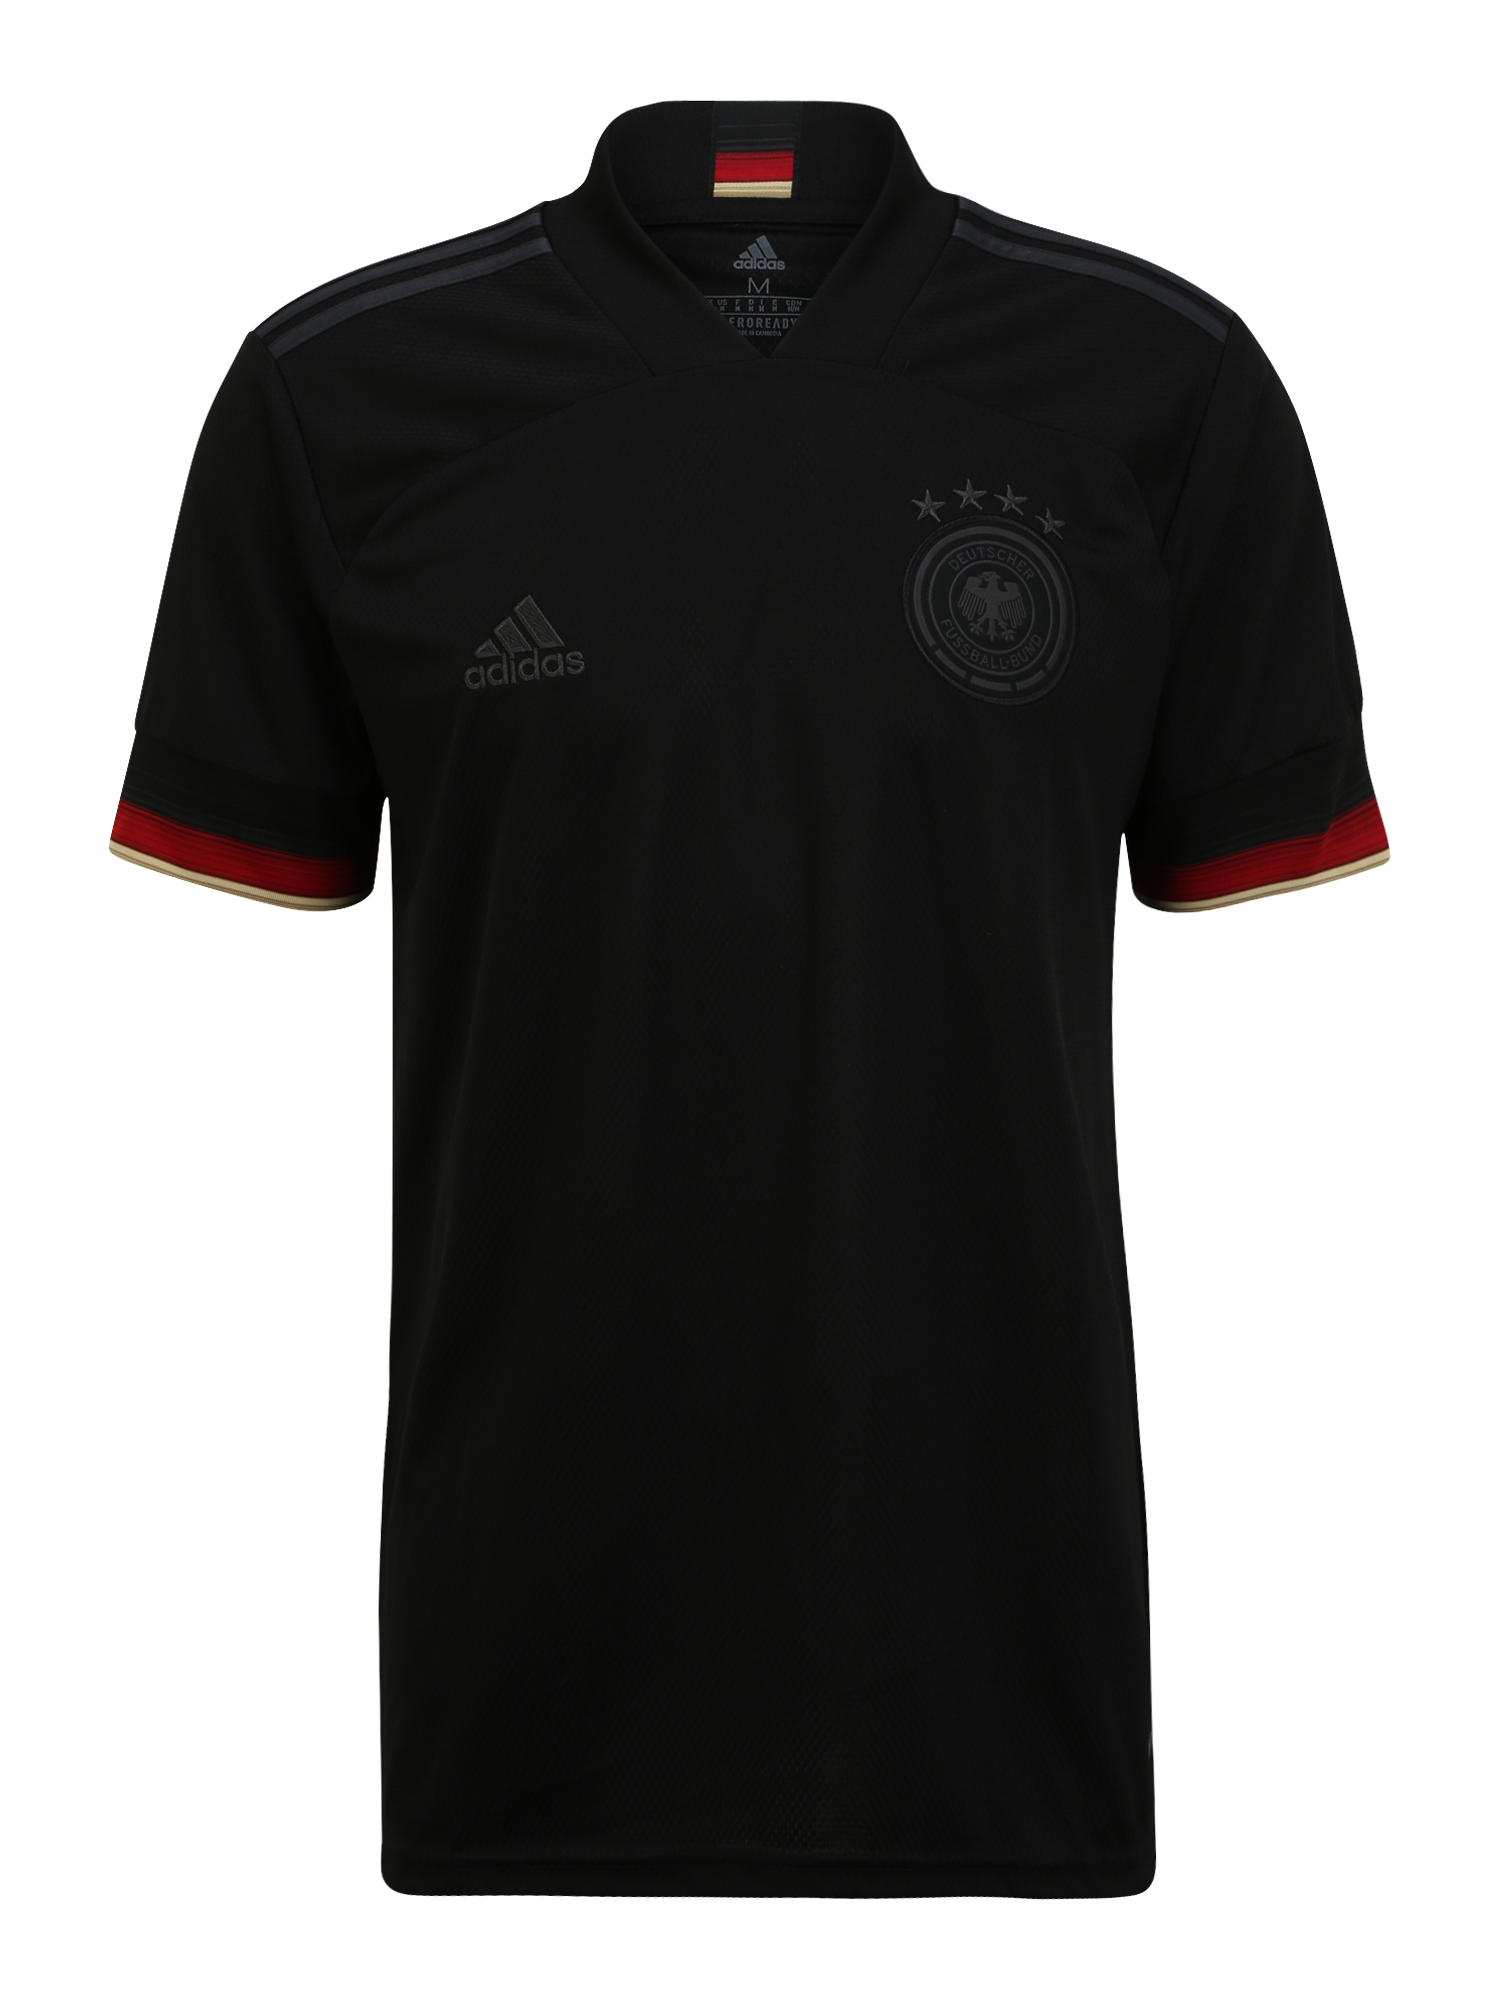 Sport Odzież ADIDAS PERFORMANCE Trykot DFB EM 2021 w kolorze Czarnym 